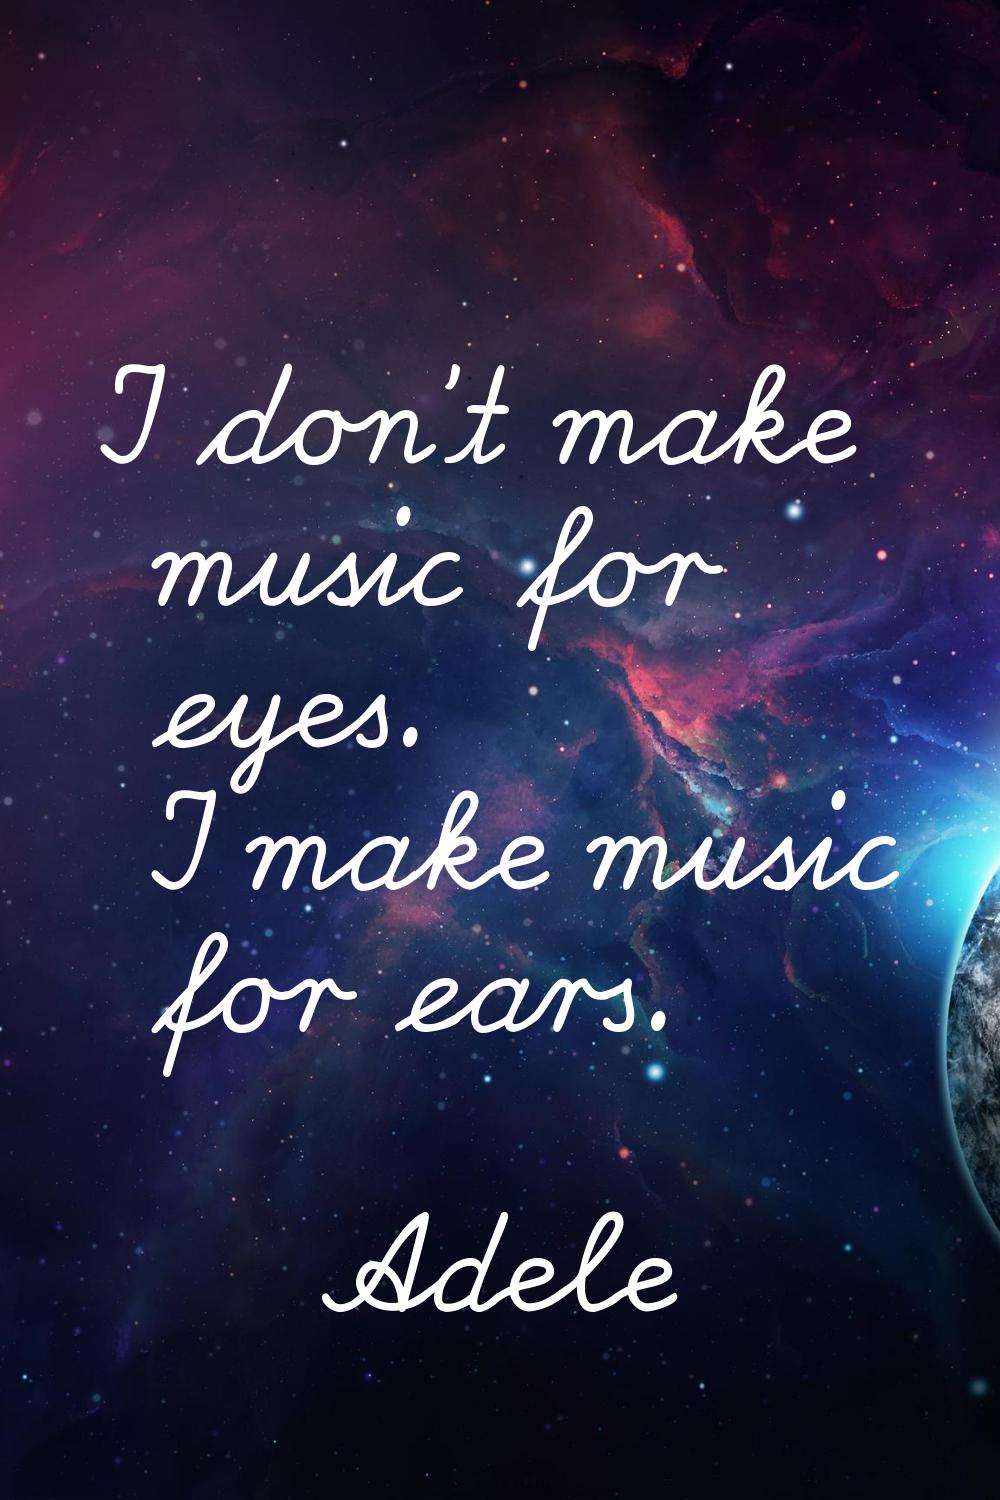 I don't make music for eyes. I make music for ears.